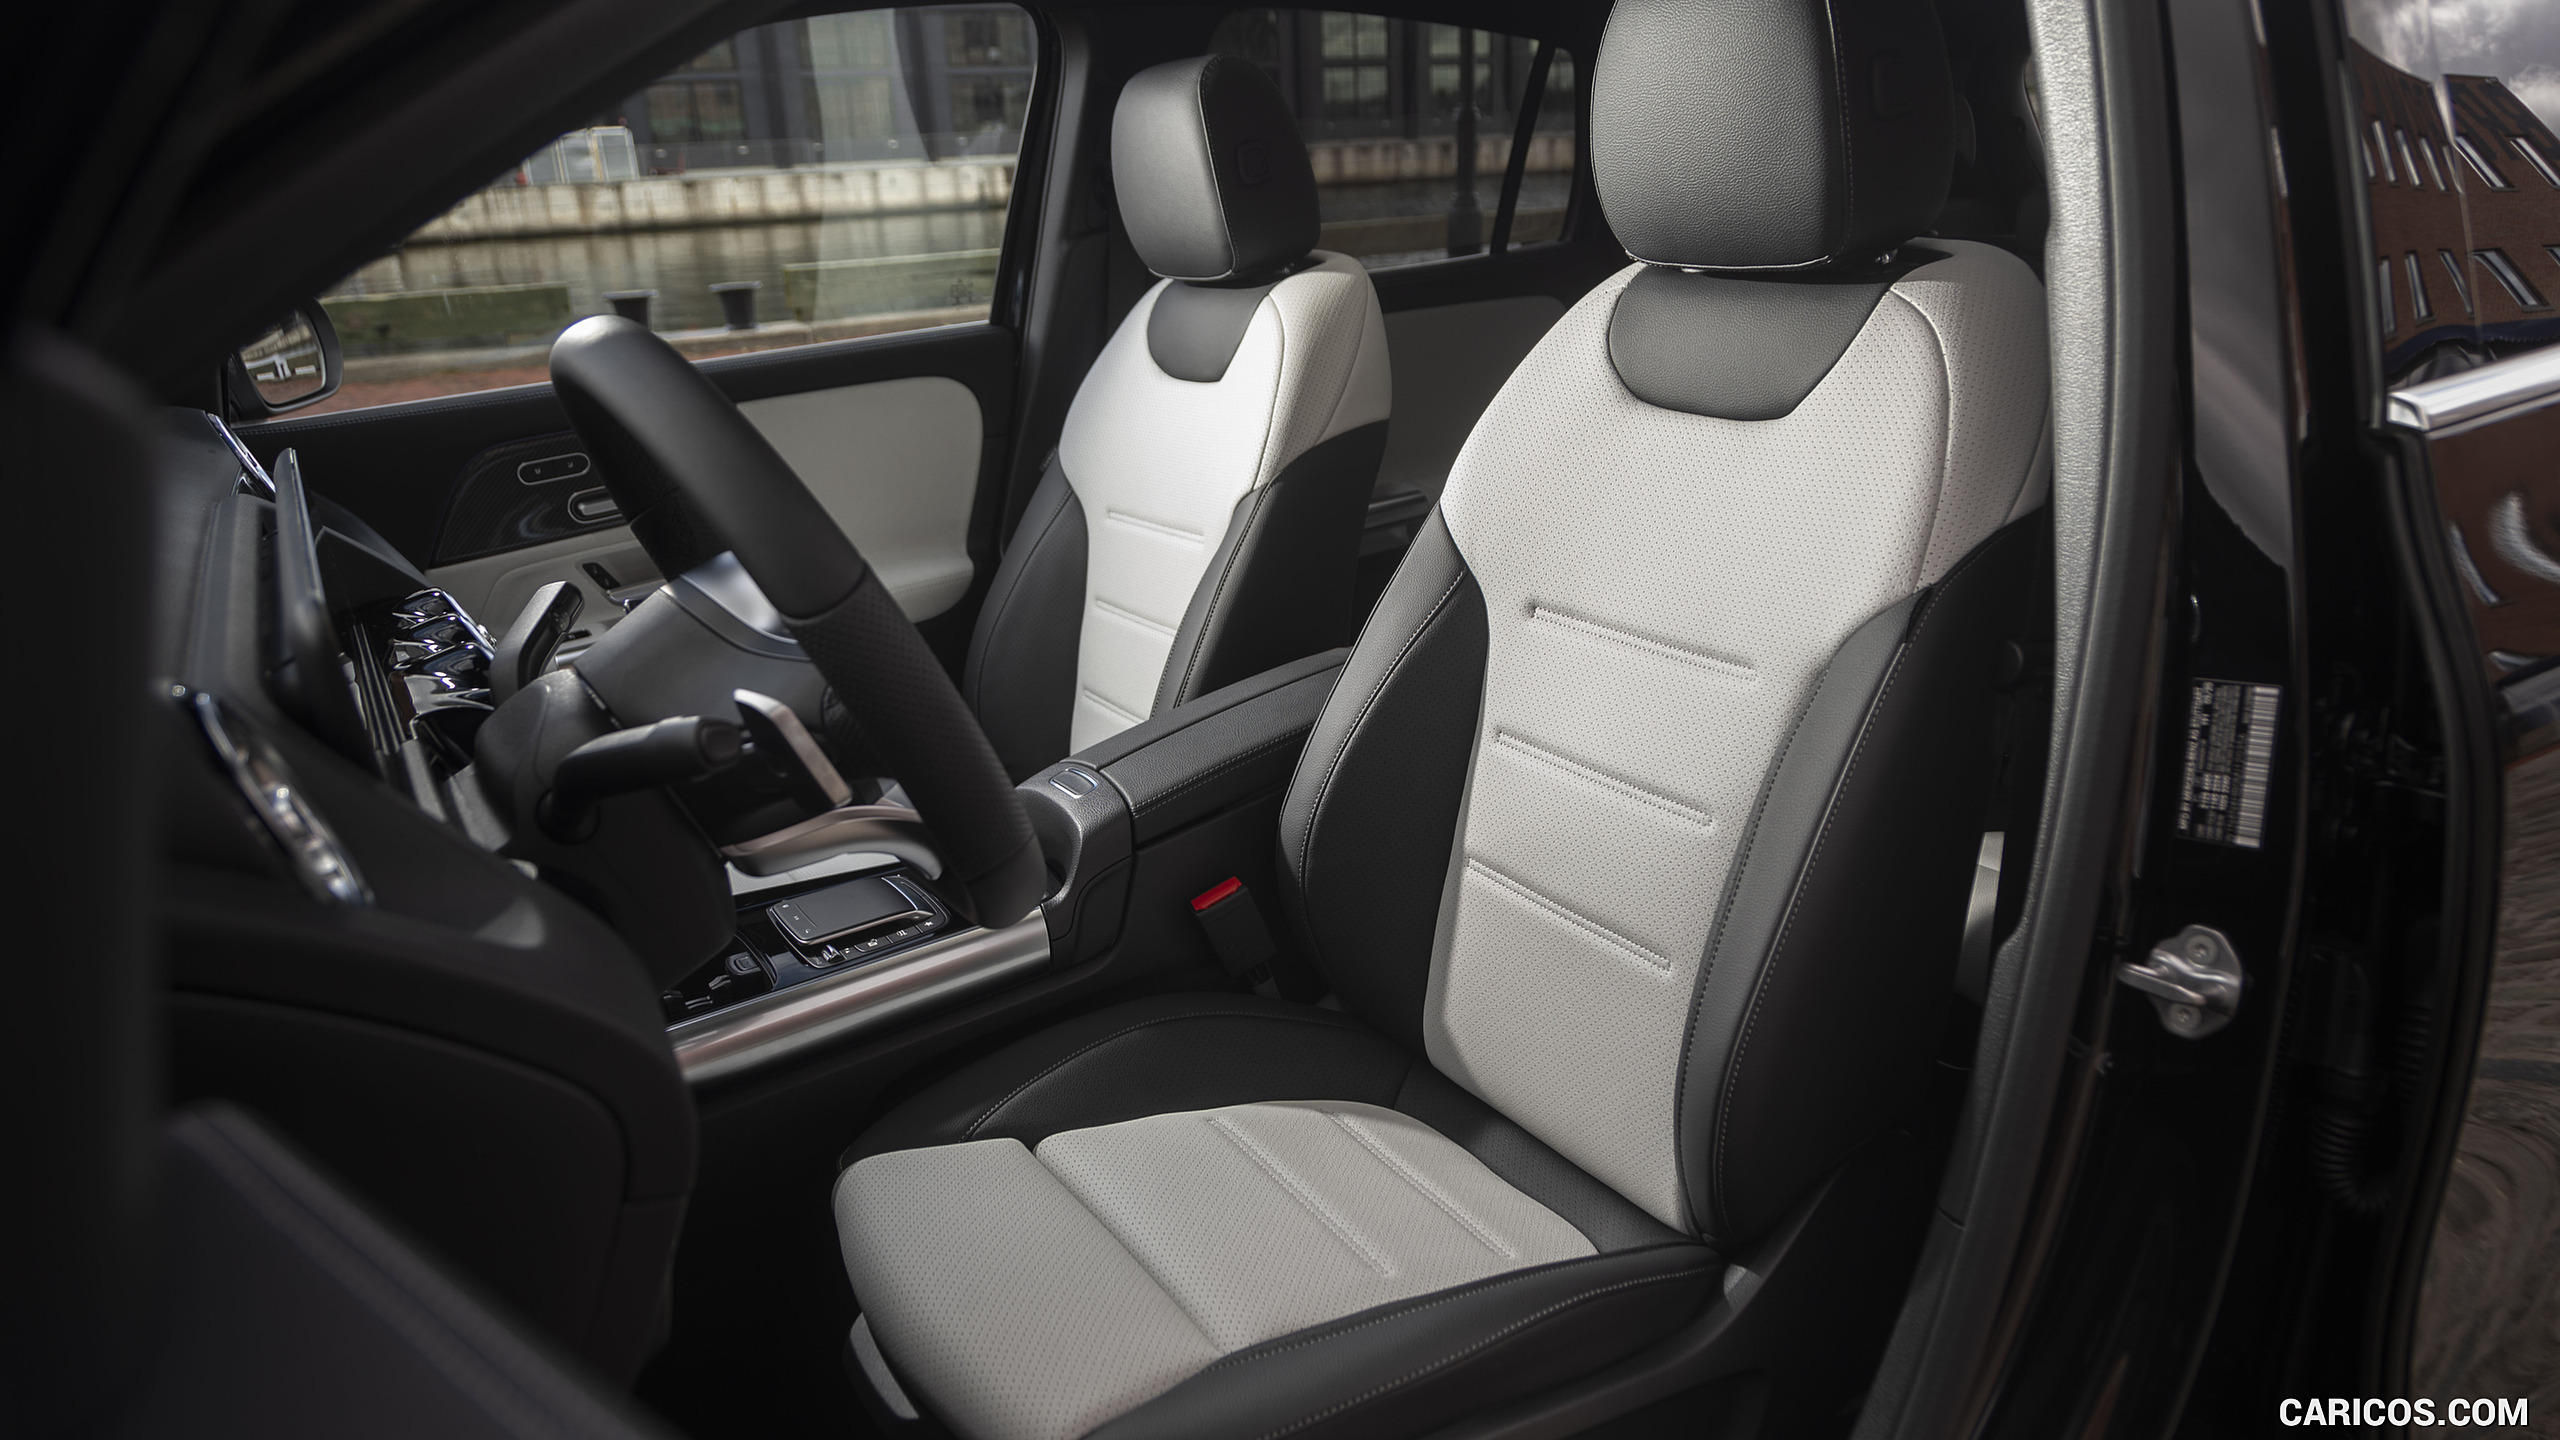 2021 Mercedes-Benz GLA 250 4MATIC (US-Spec) - Interior, Front Seats, #267 of 280